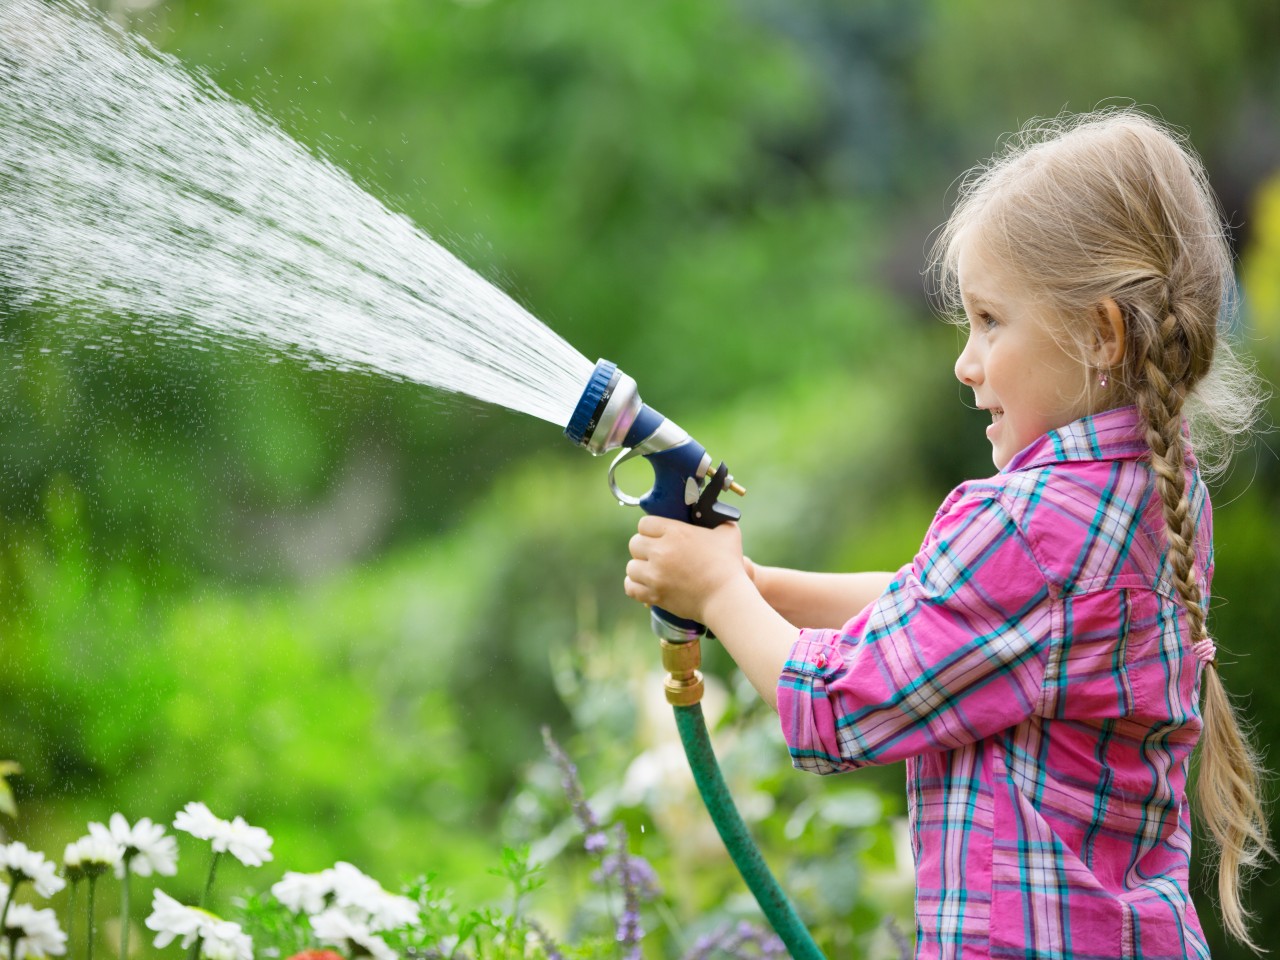 Mädchen mit Gartenschlauch spritzt Wasser im Garten